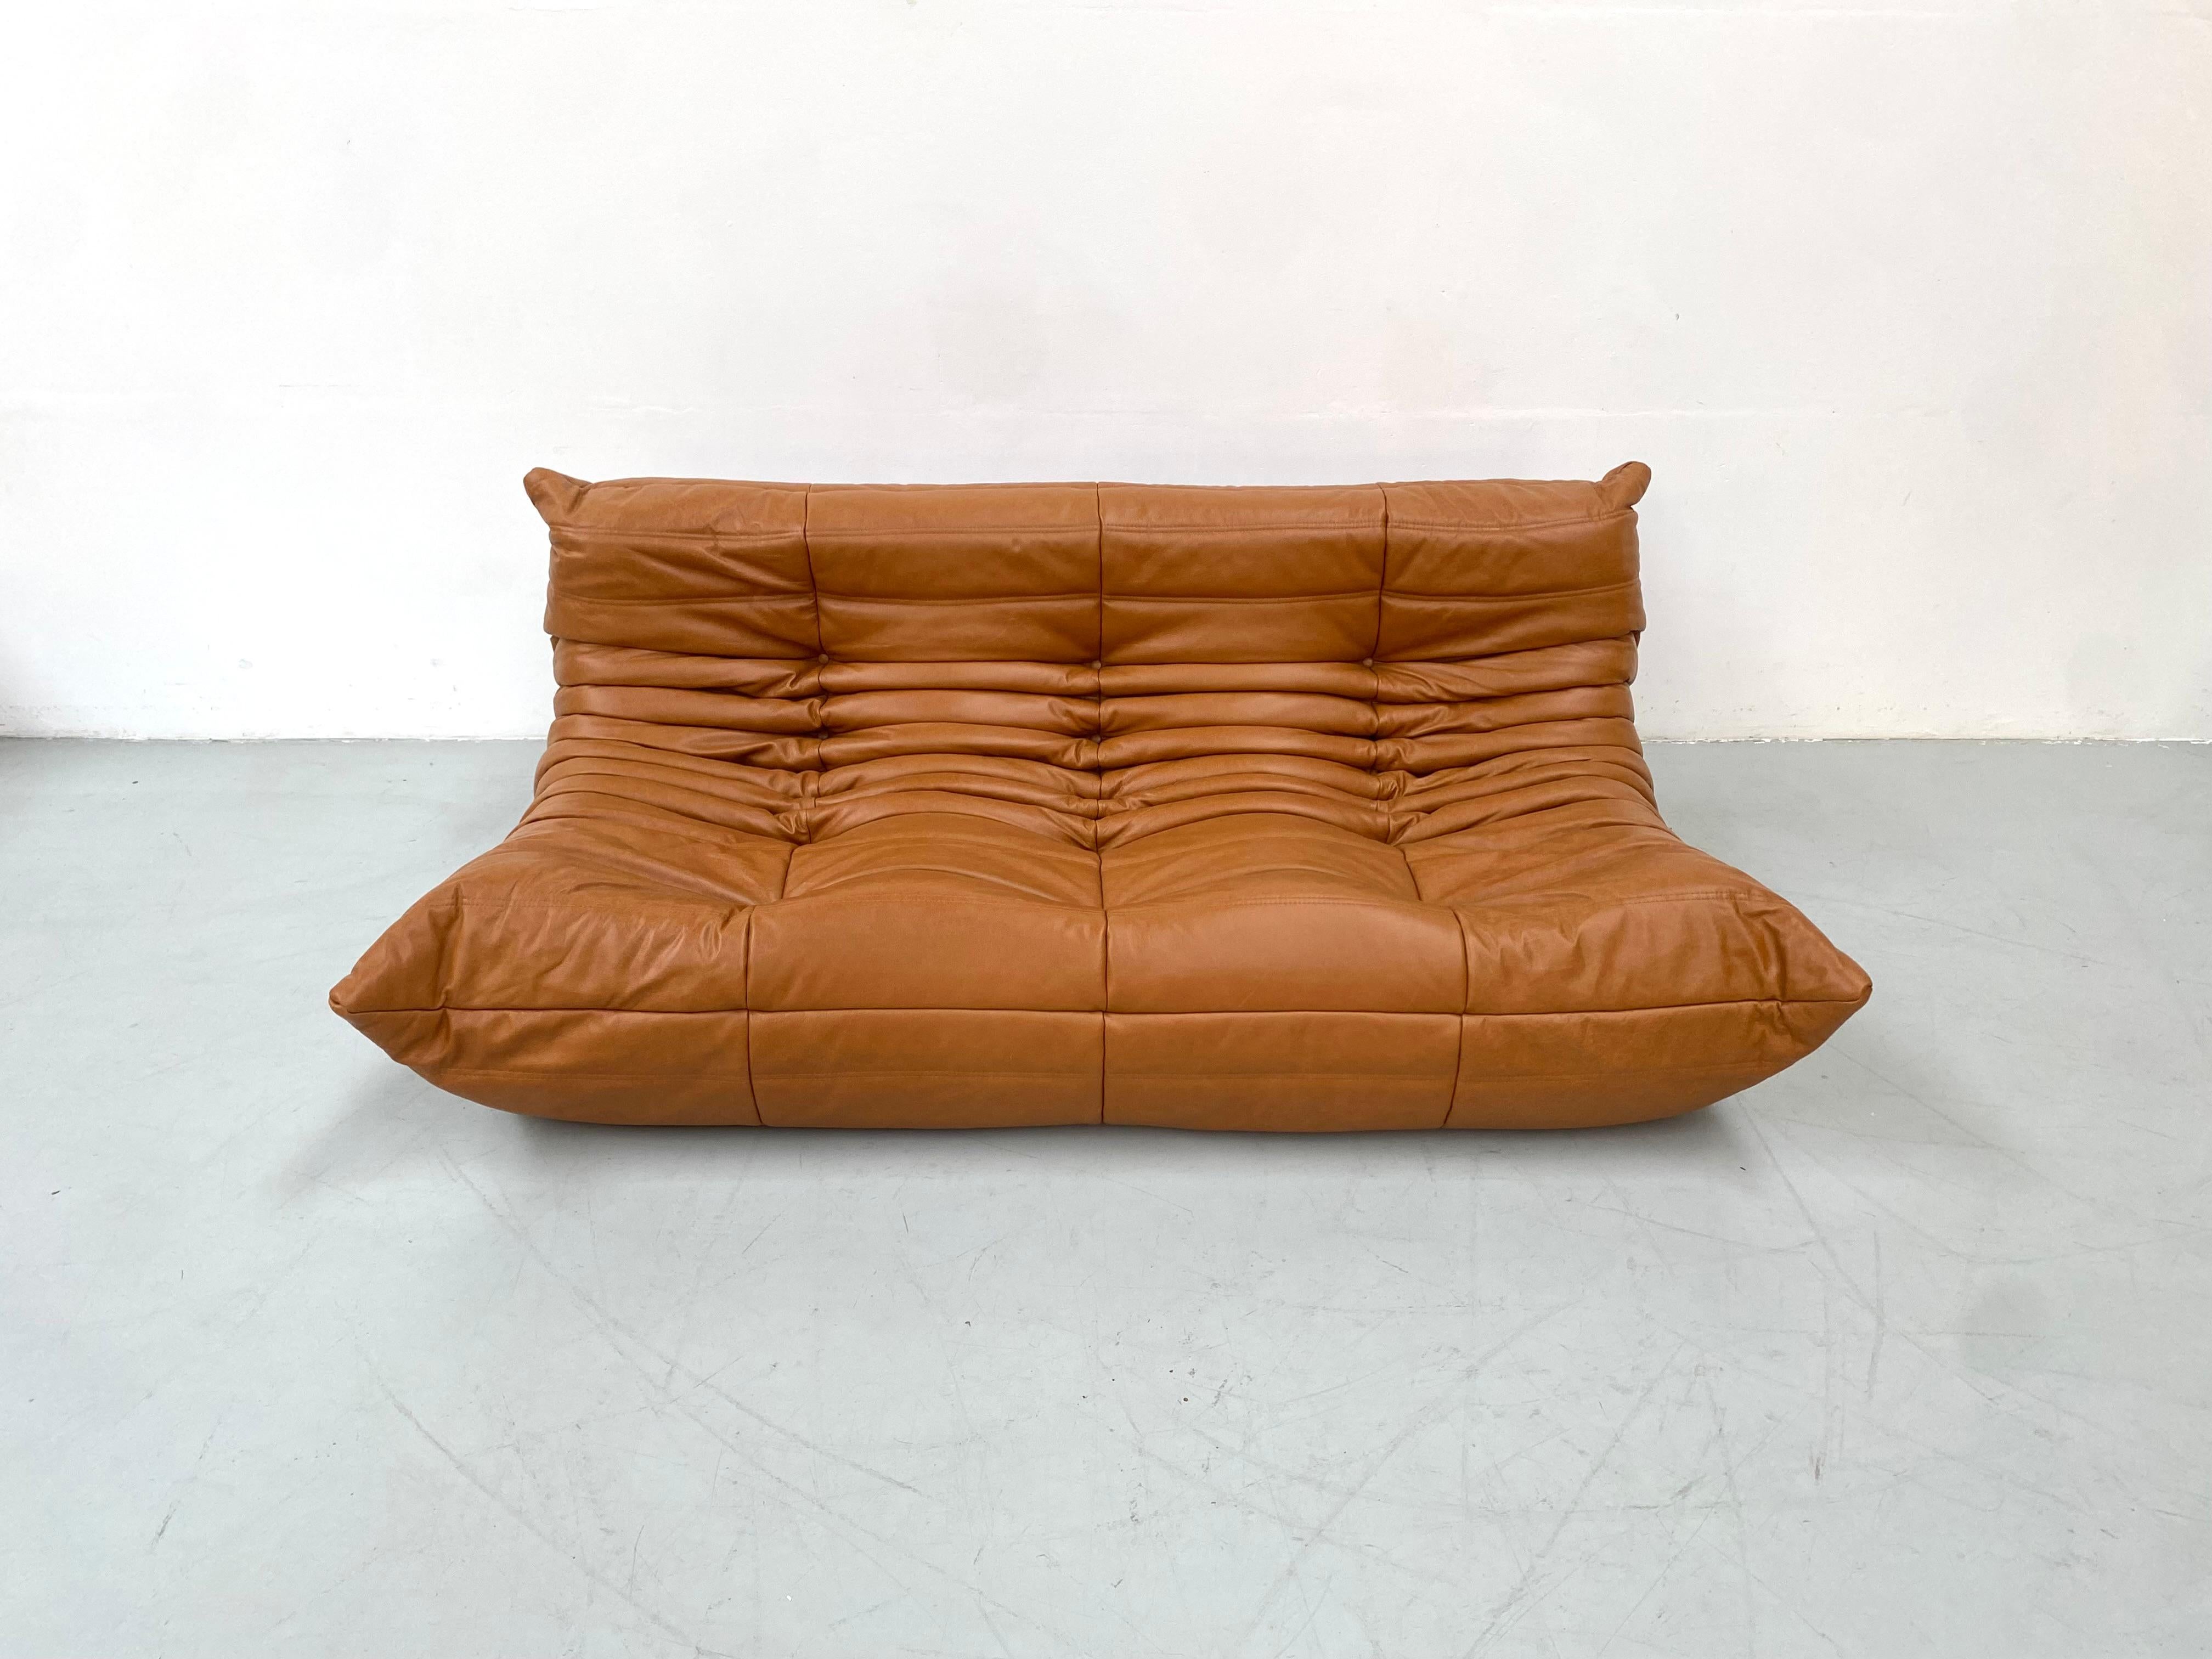 Der Togo wurde 1973 von Michel Ducaroy entworfen.  Es ist das erste Sofa/Sessel, das nur aus Schaumstoff und Leder besteht. Das Innenleben besteht aus Schaumstoff in 5 verschiedenen Dichten. Hergestellt von Ligne Roset in Frankreich.